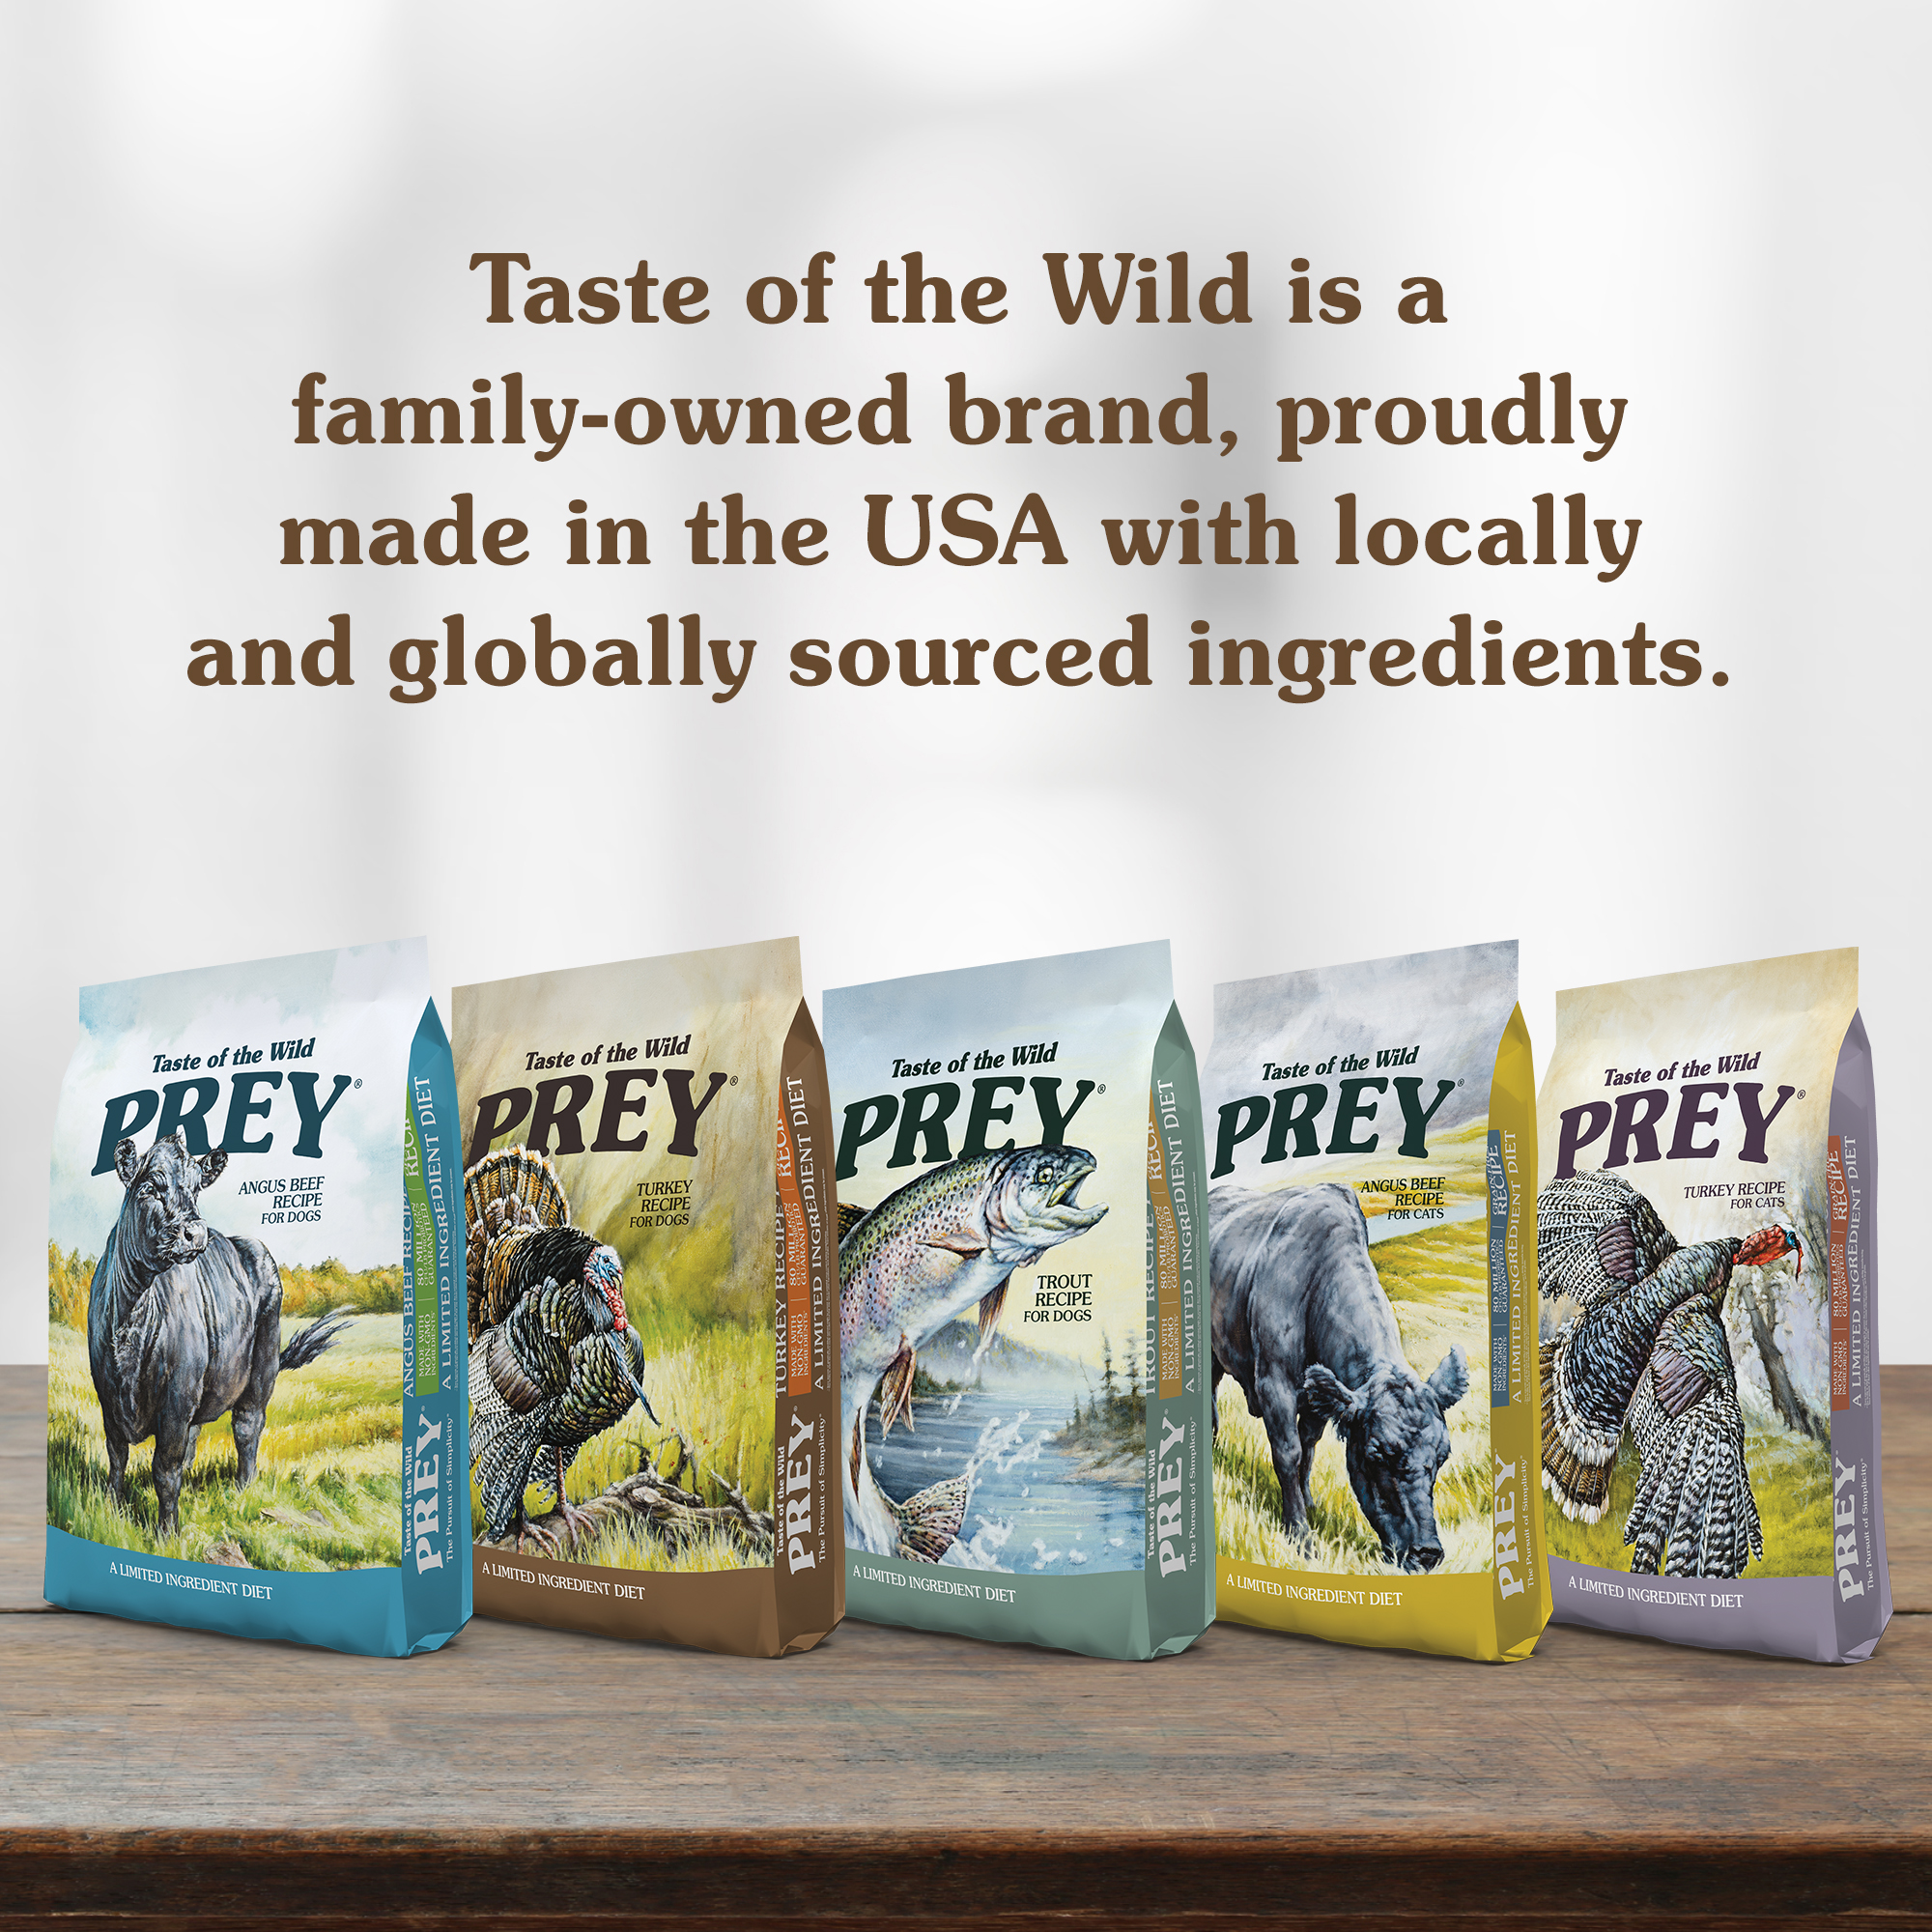 Bags of Taste of the Wild PREY Pet Food | Taste of the Wild